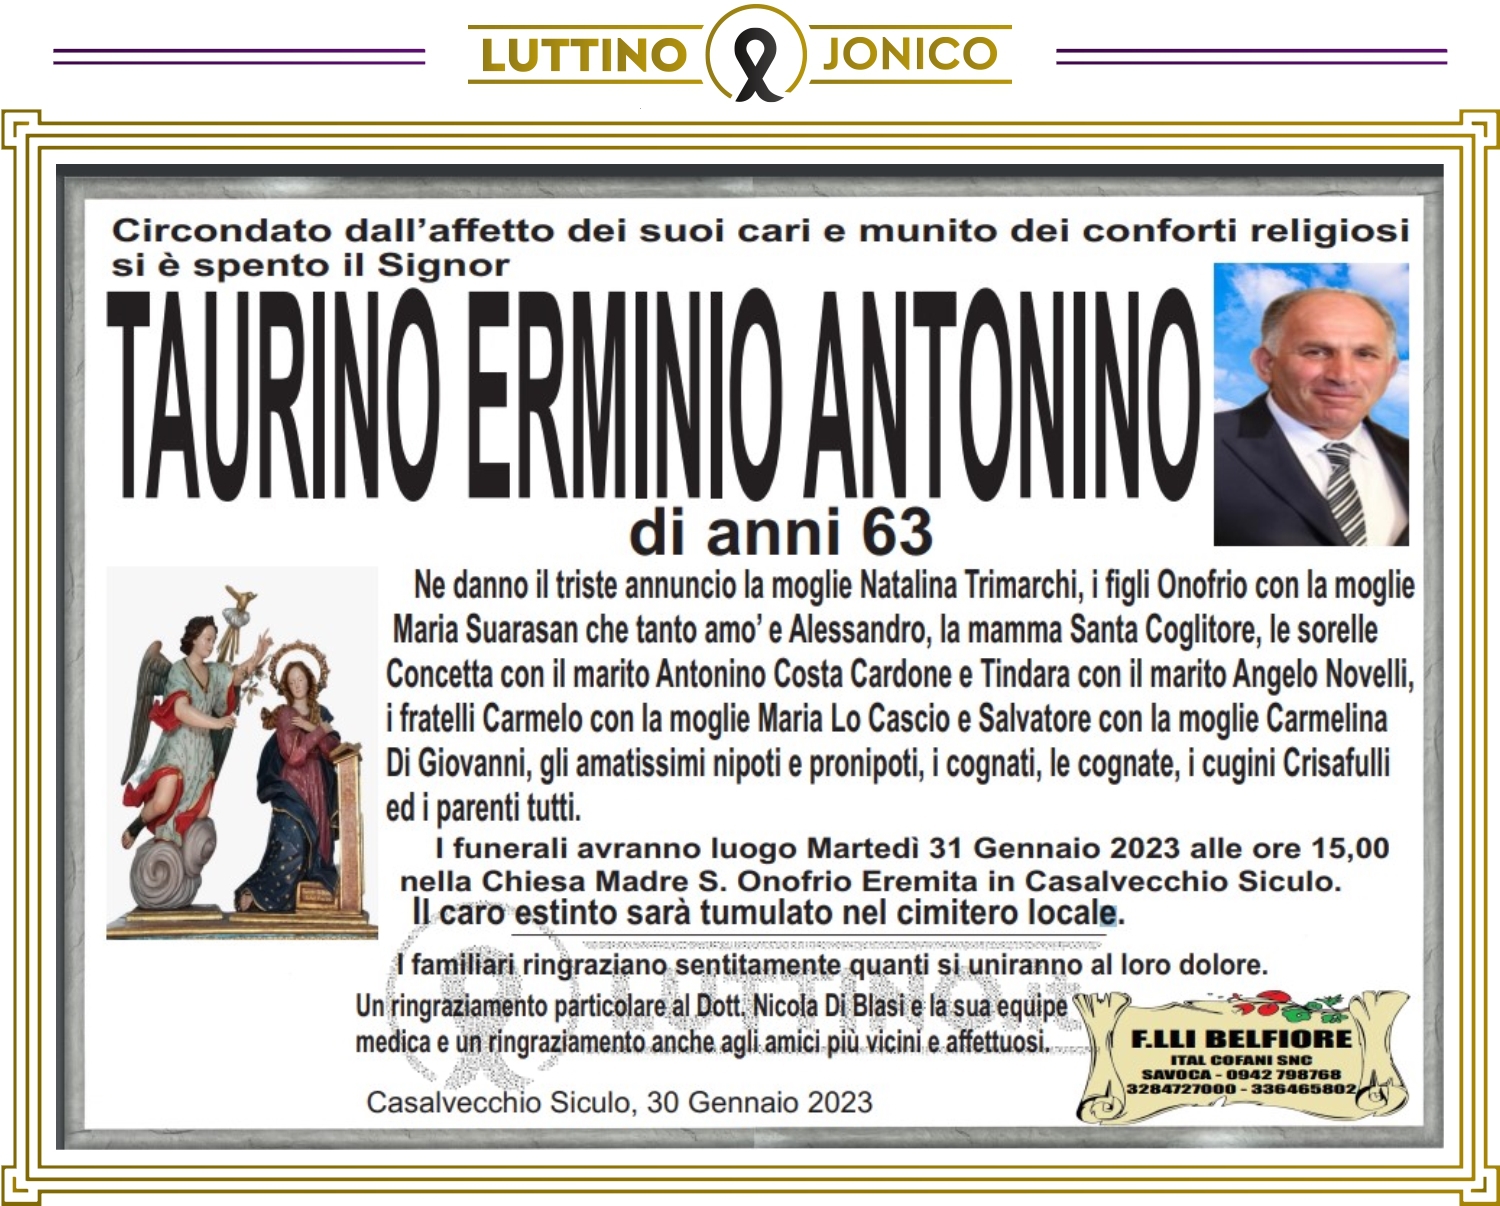 Erminio Antonino Taurino